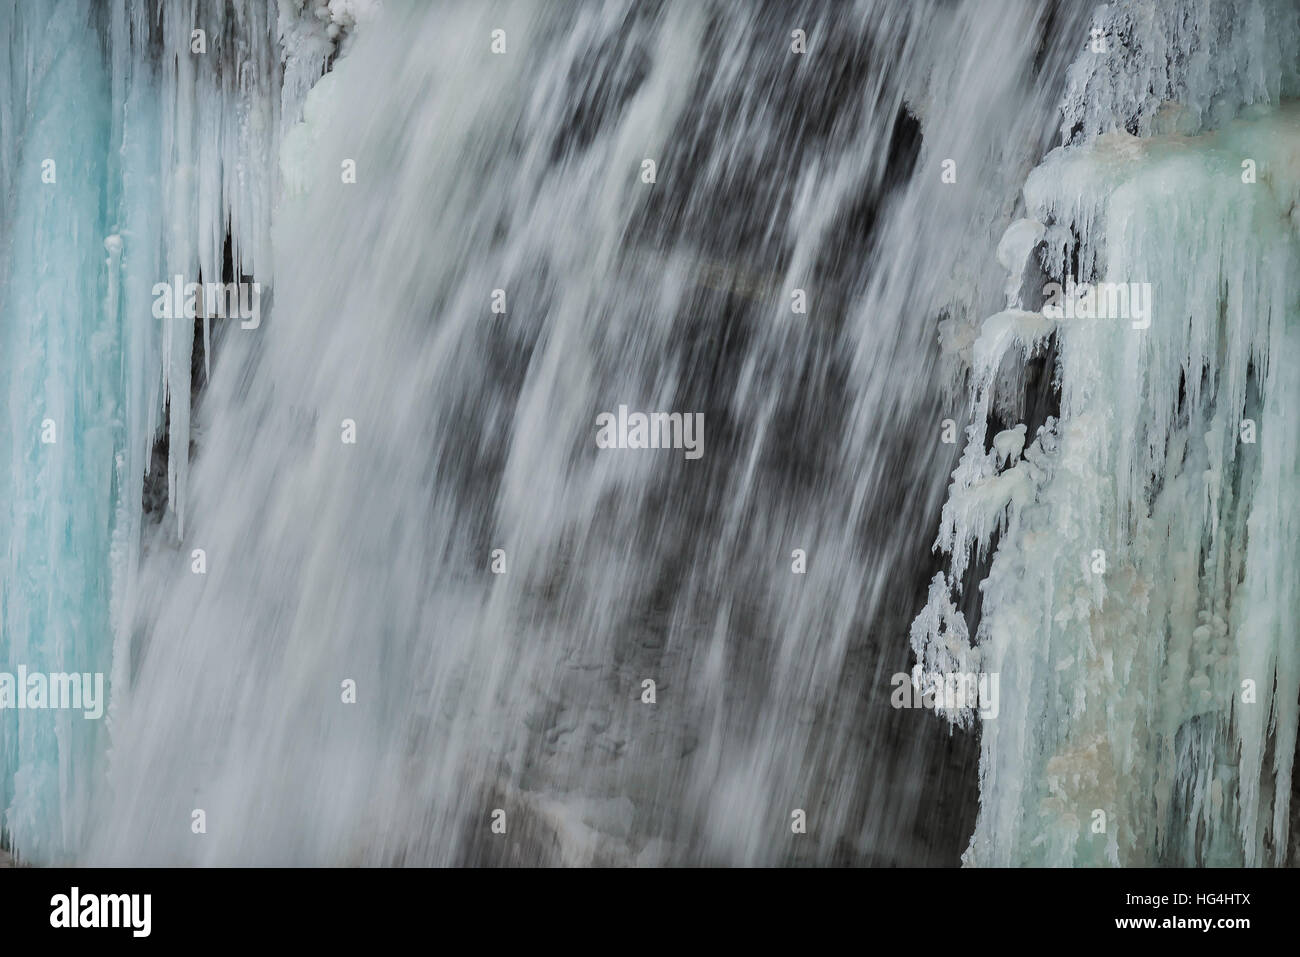 Close-up d'une cascade de glace de congélation s'écoulant en chutes de Minnehaha à Minneapolis au Minnesota. Banque D'Images